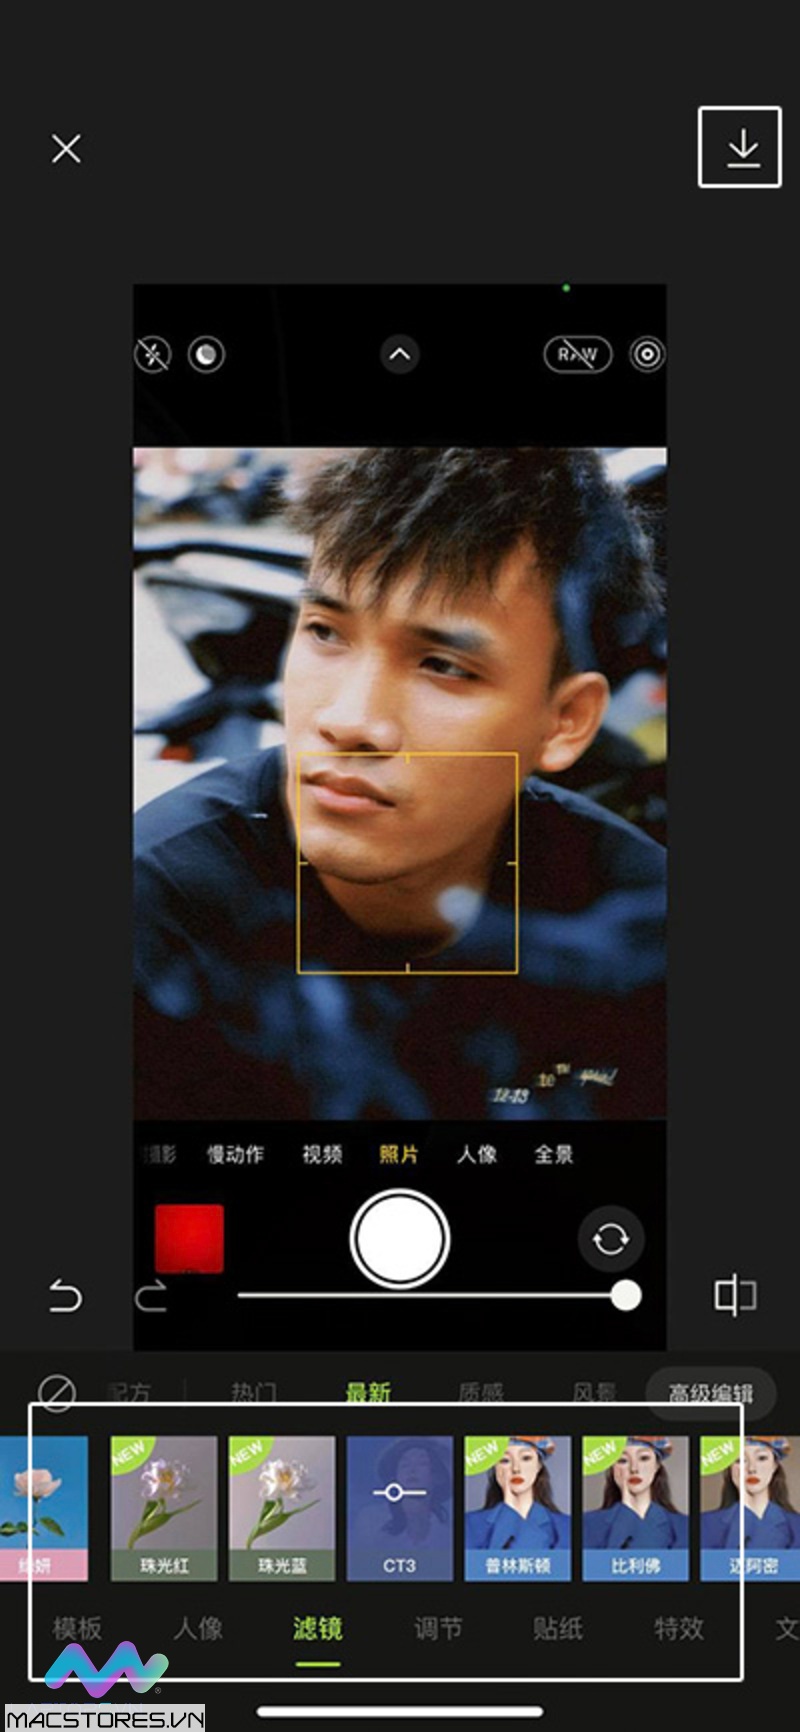 cách tải app Xingtu 醒图 trên iPhone